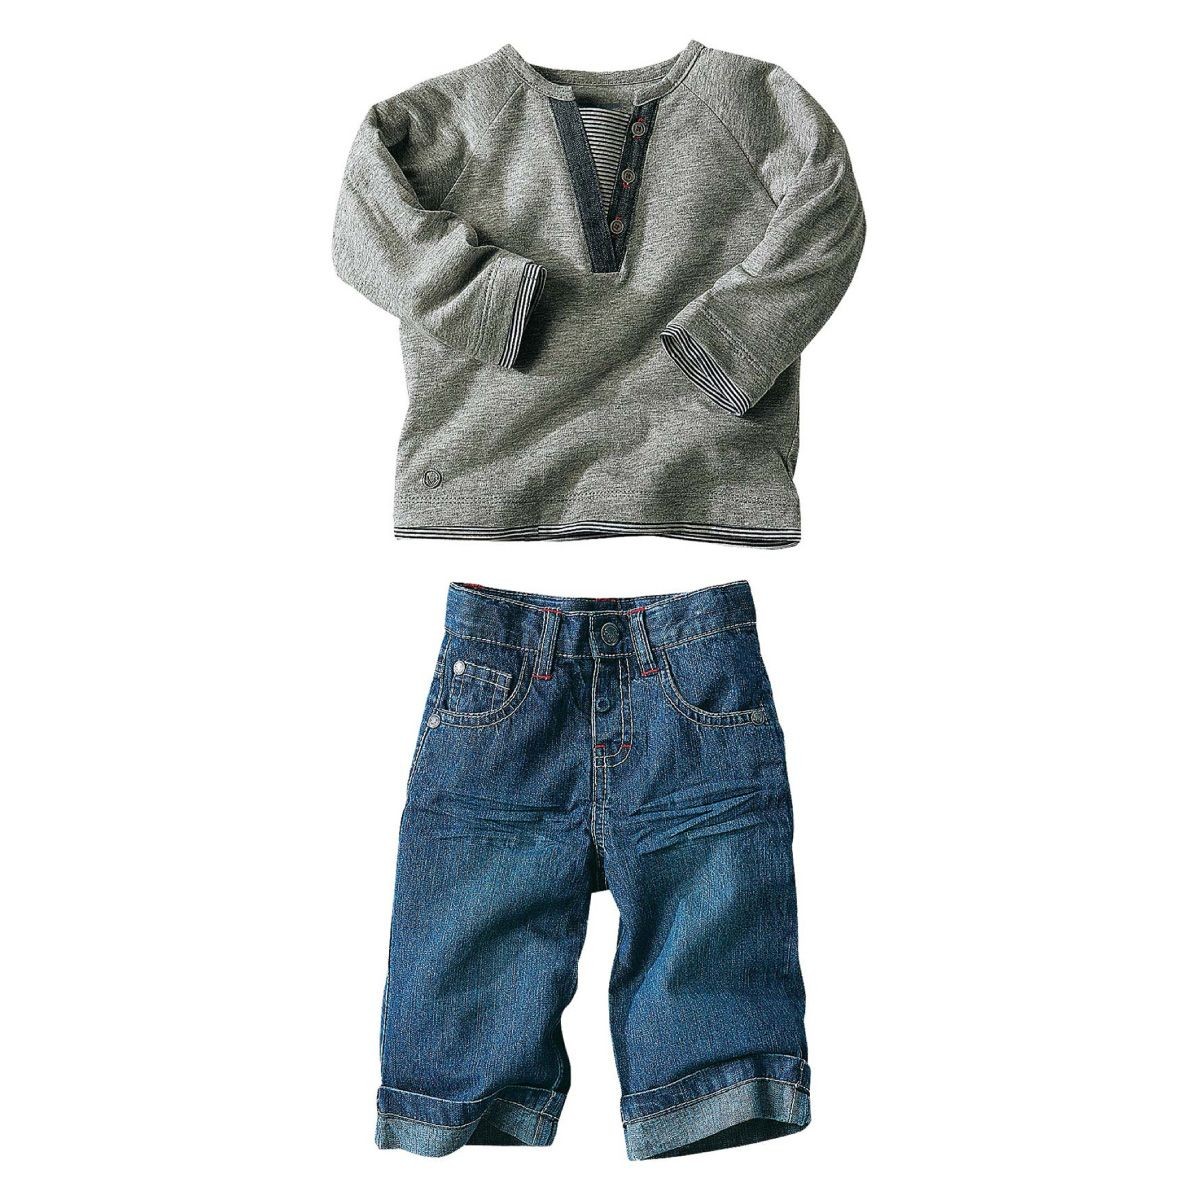 Conjunt: samarreta i texans per a nadó nen